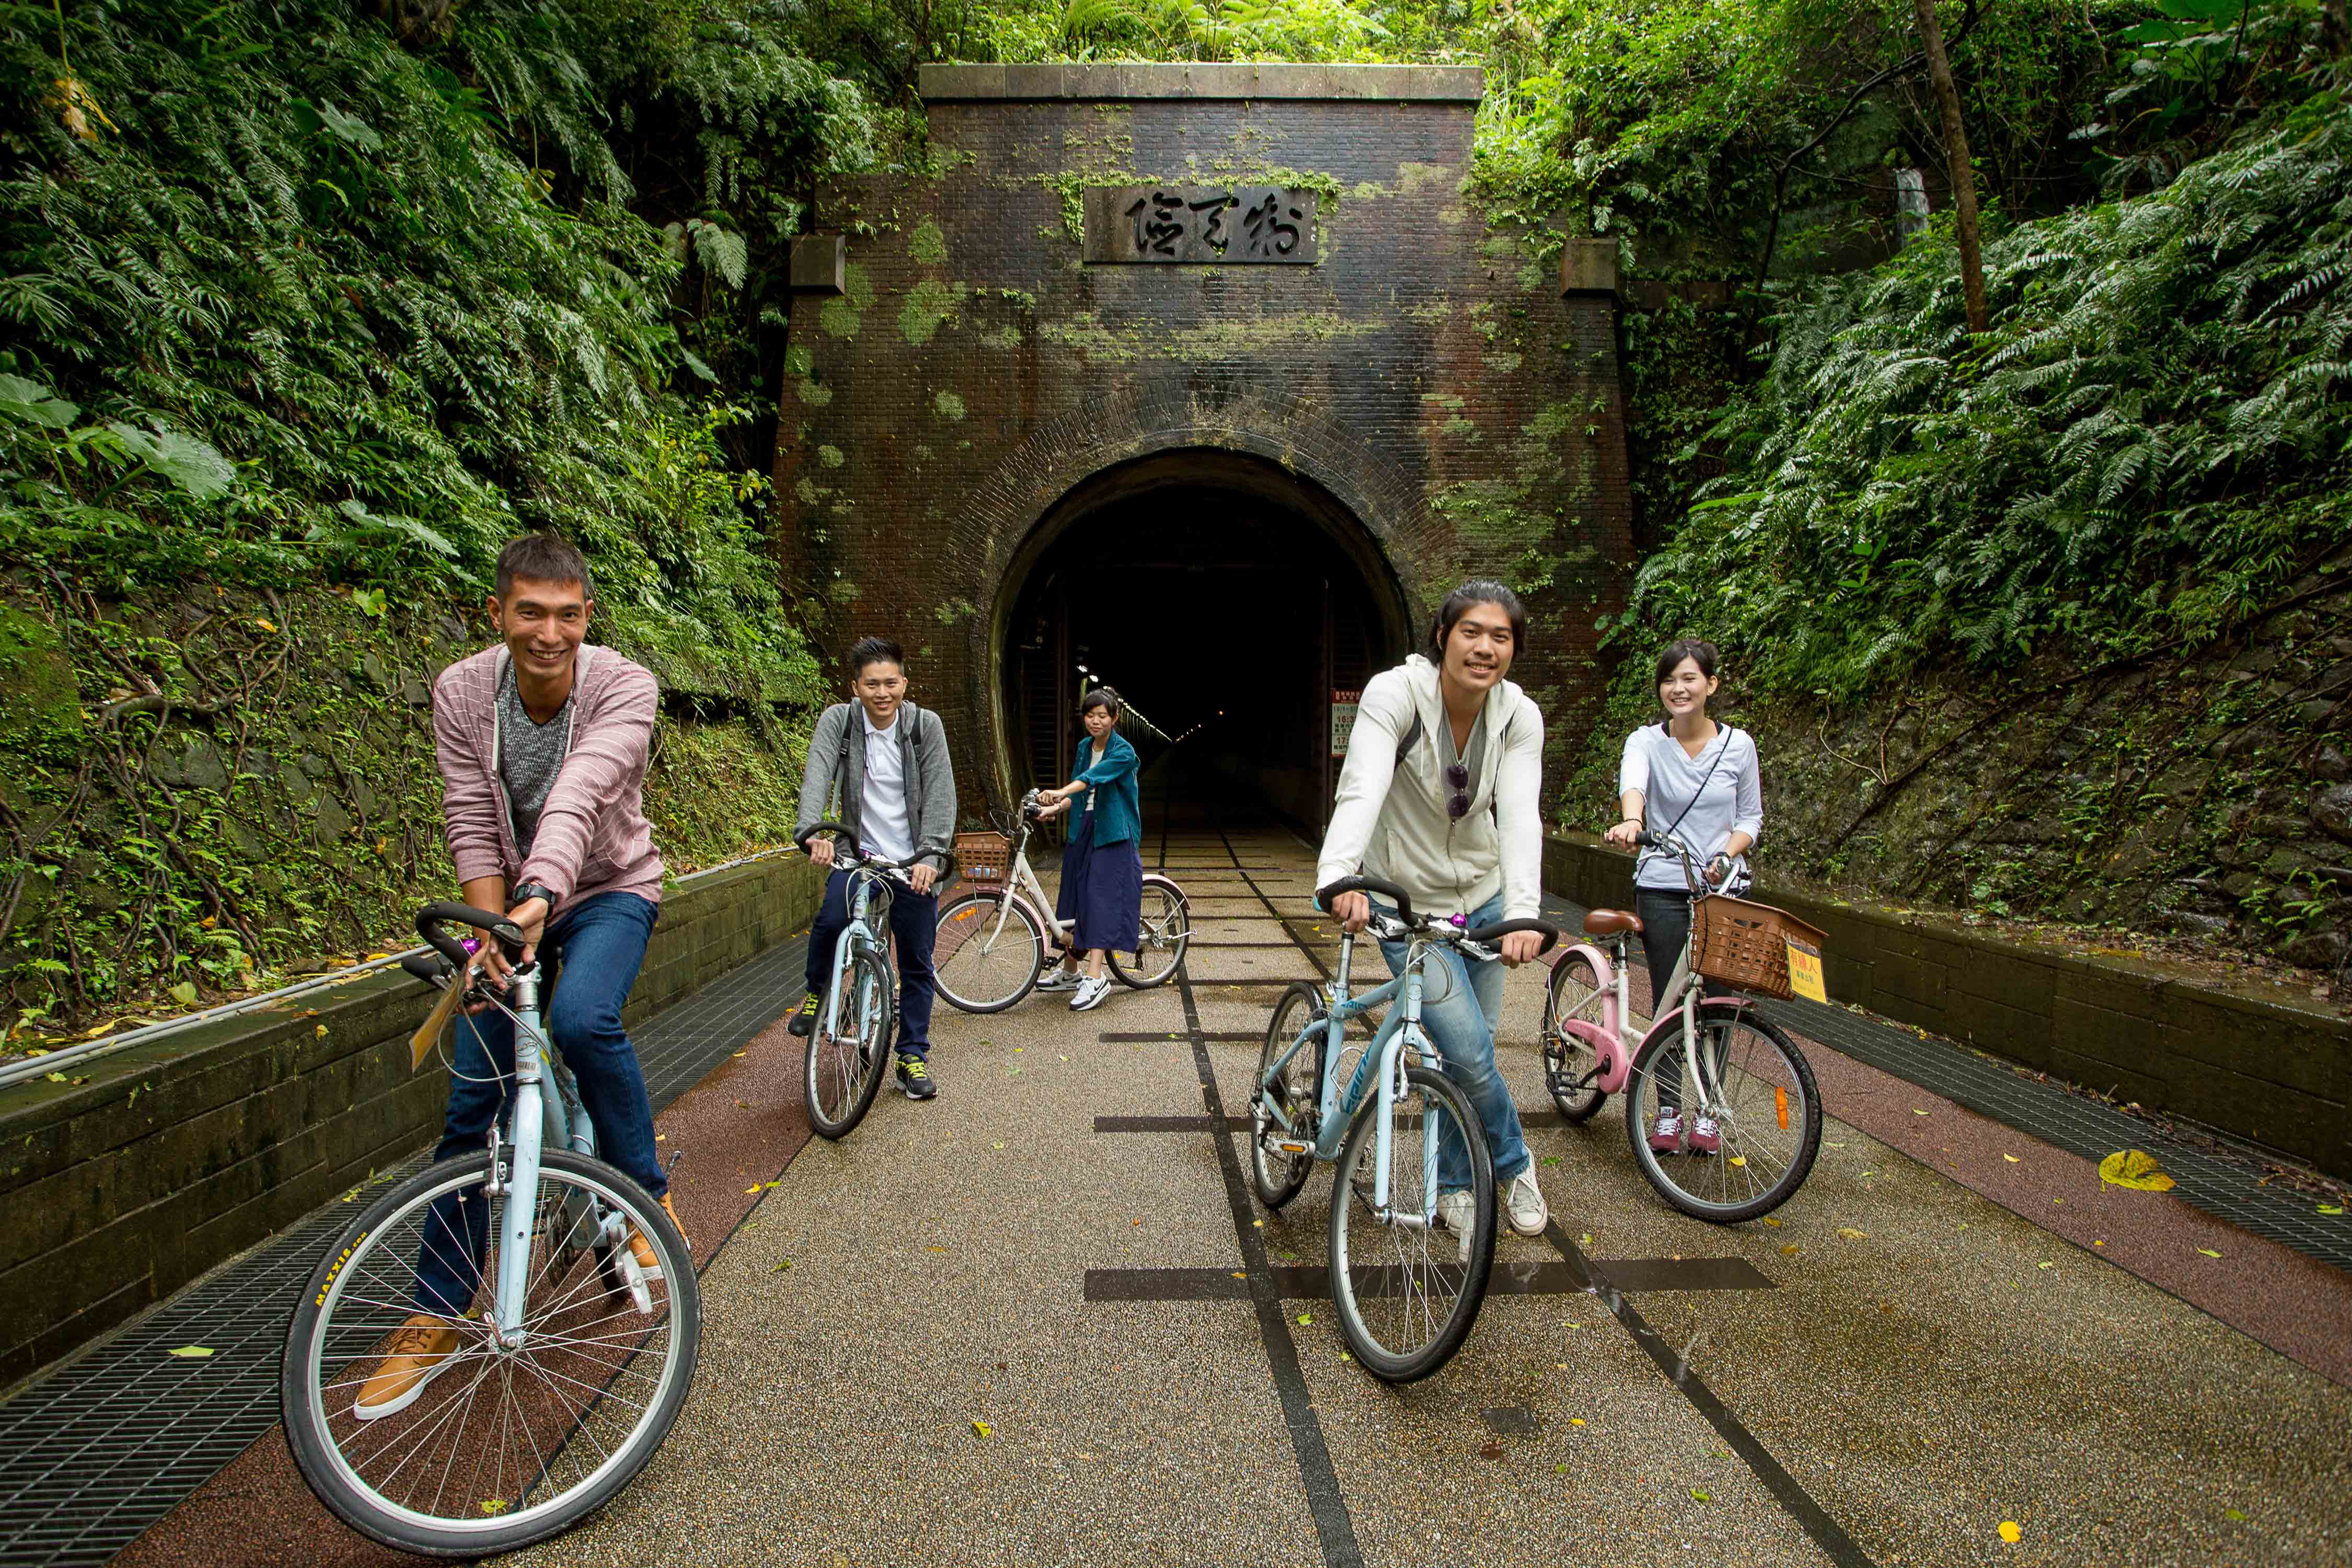 草 嶺 舊 隧 道 是 體 驗 「 運 動 度 假 」 的 其 中 一 個 景 點 。 